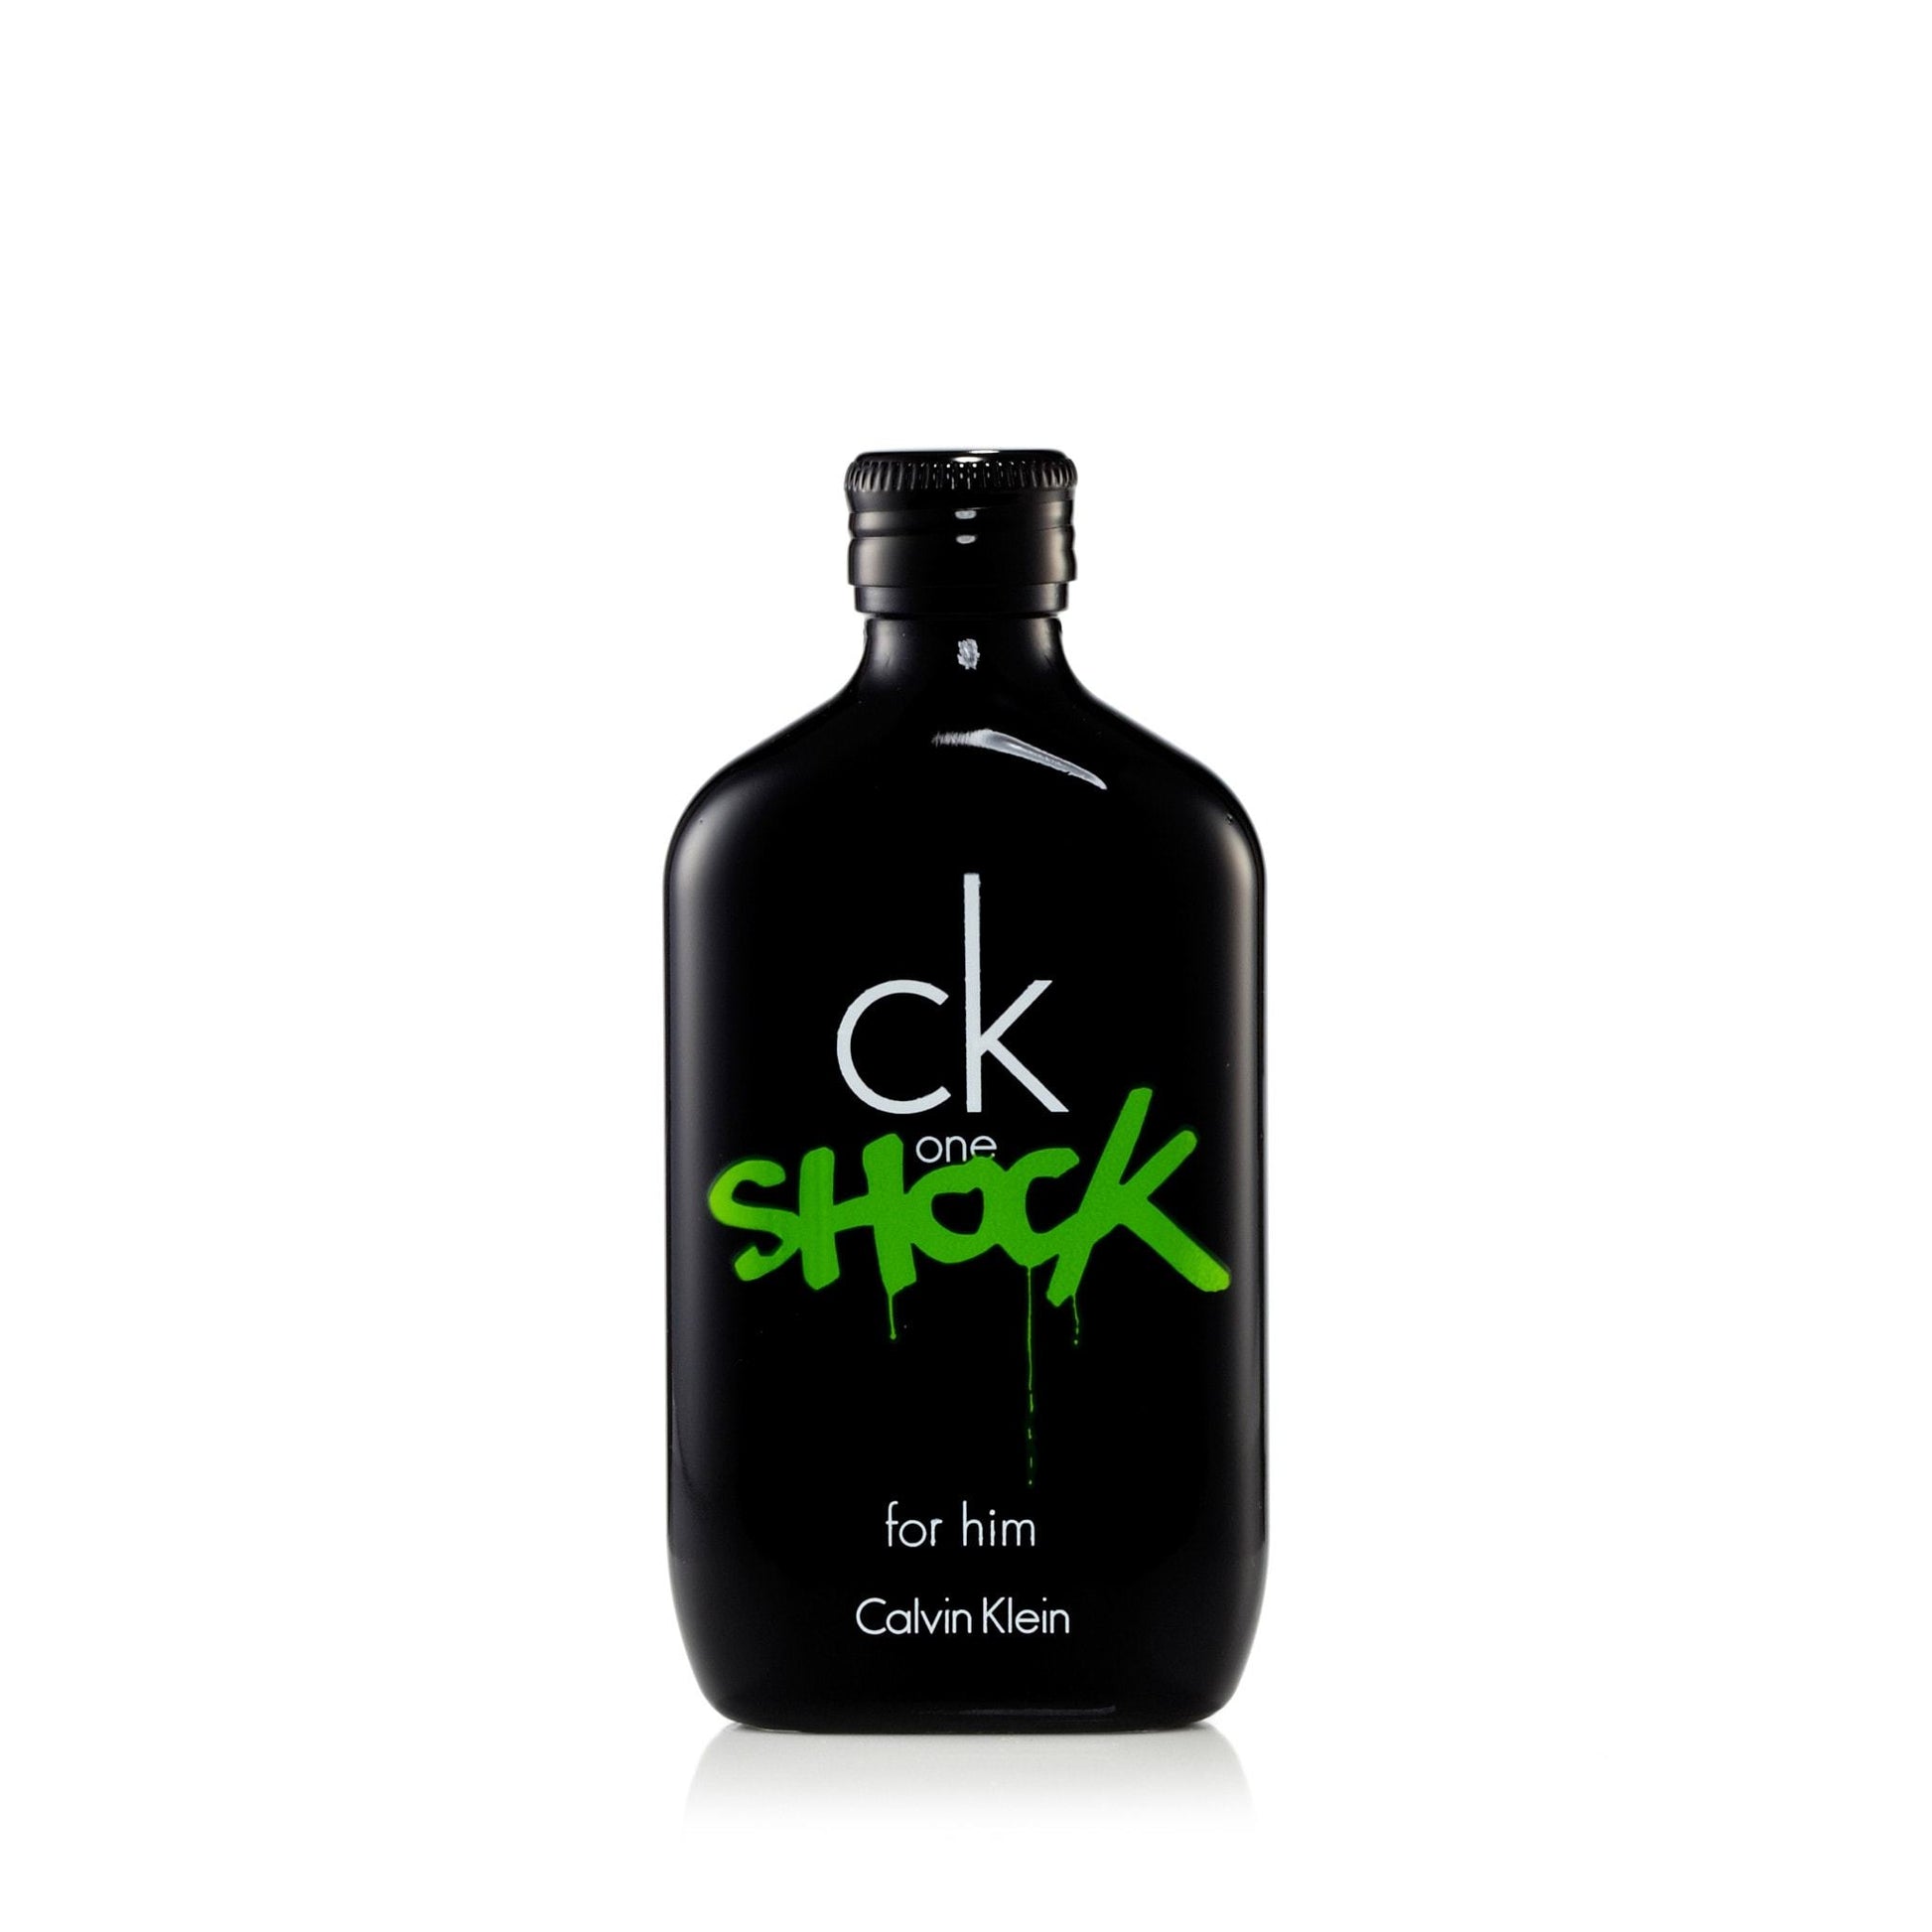 CK One Shock Eau de Toilette Spray for Men by Calvin Klein, Product image 3